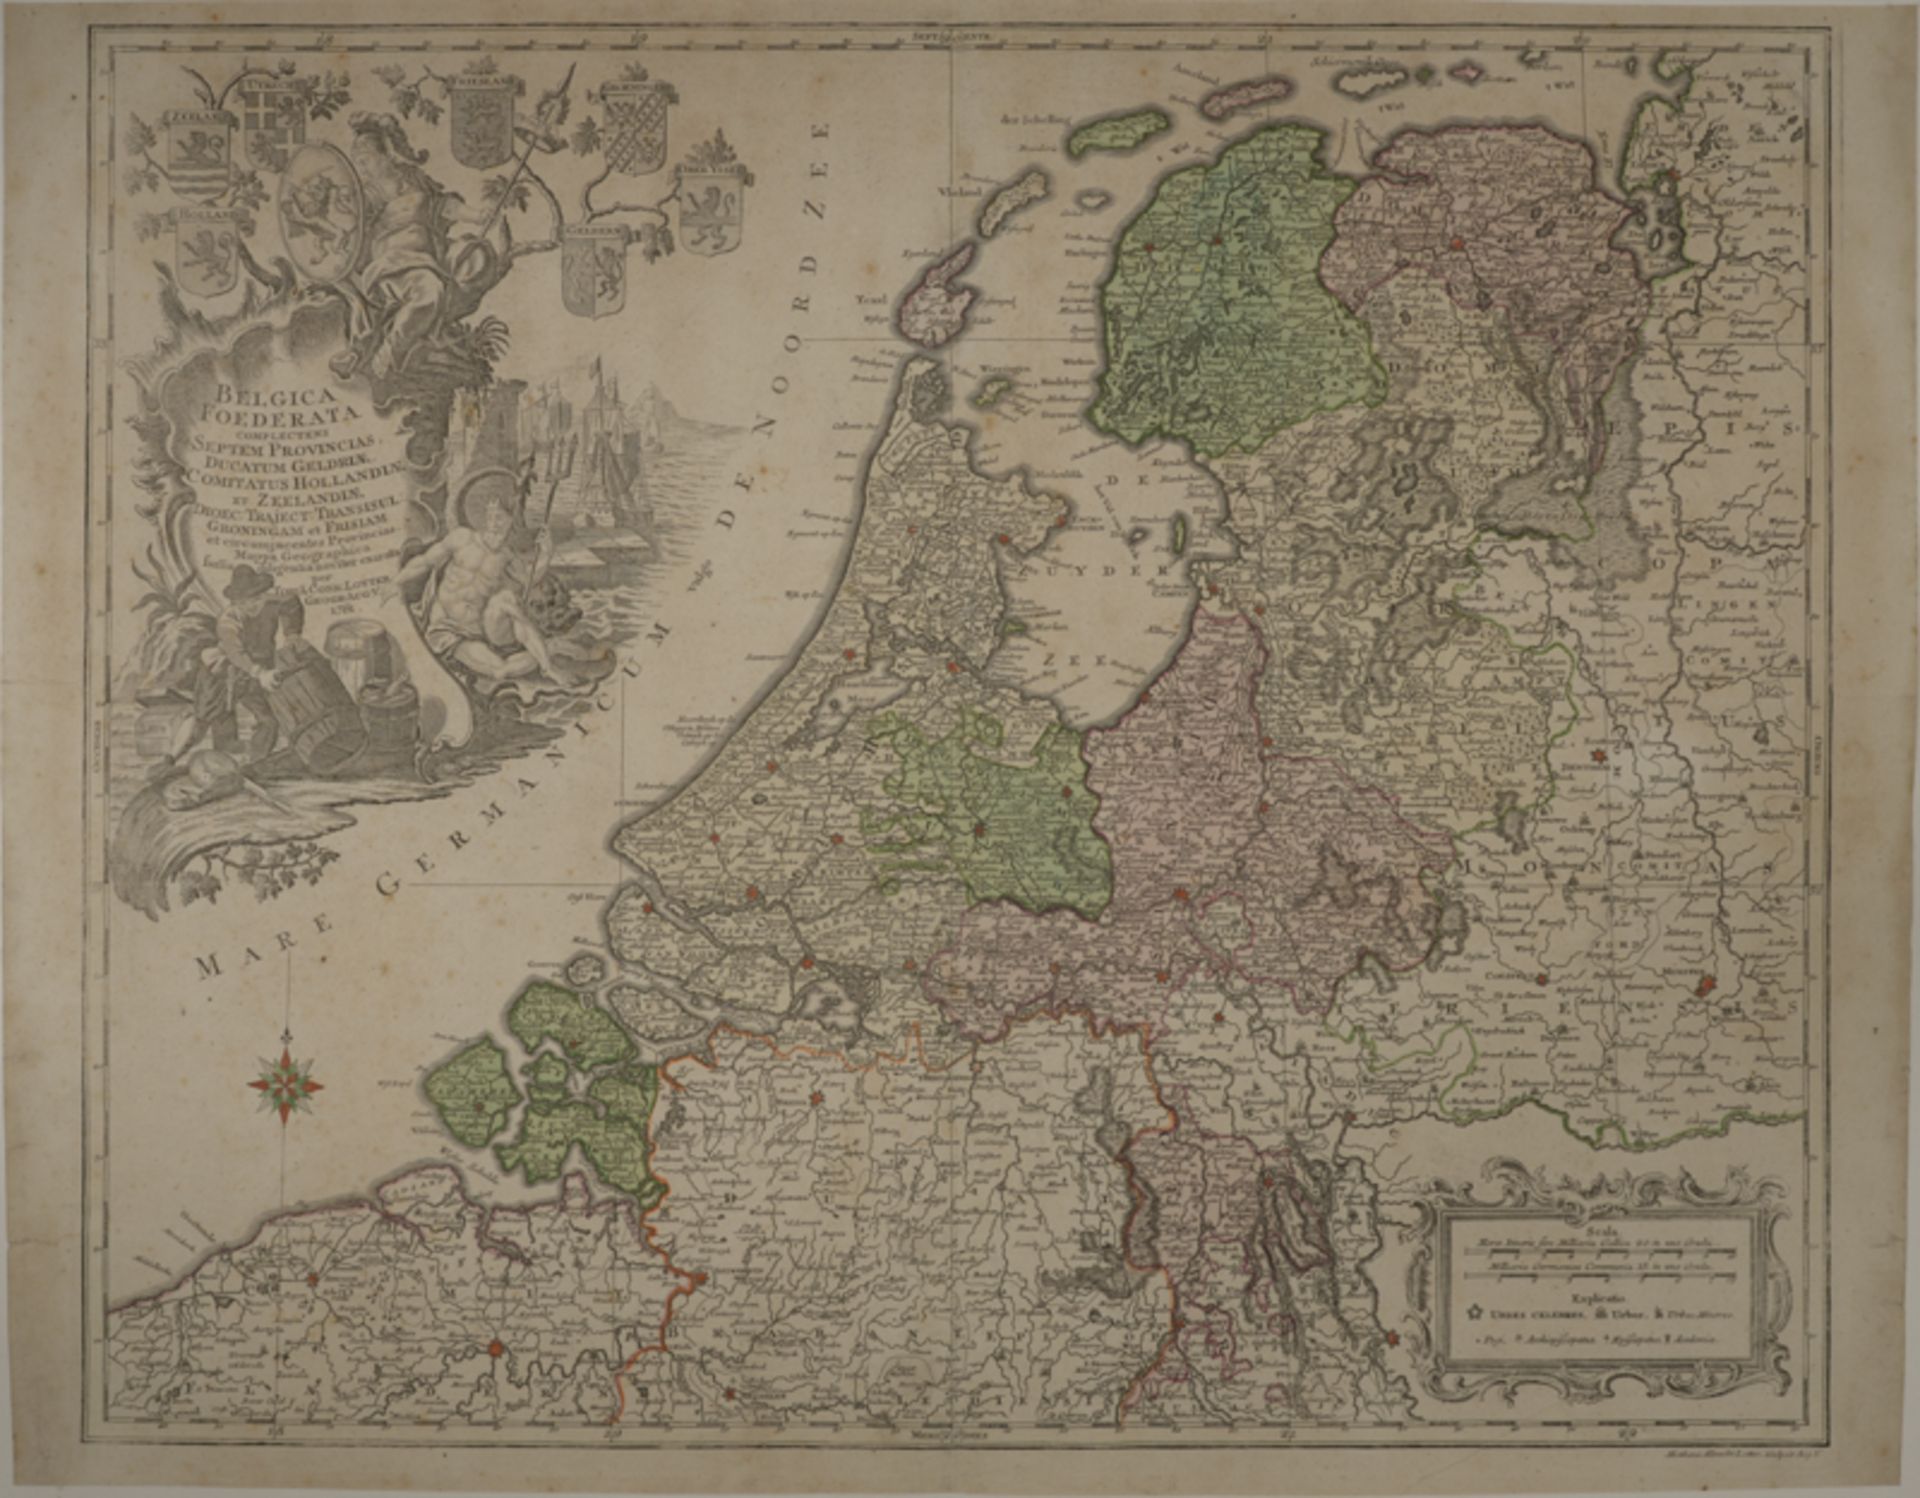 Tobias Conrad Lotter (1717 - 1777) - Radierung/Kupferstich, colorierte Landkarte von Belgien und den